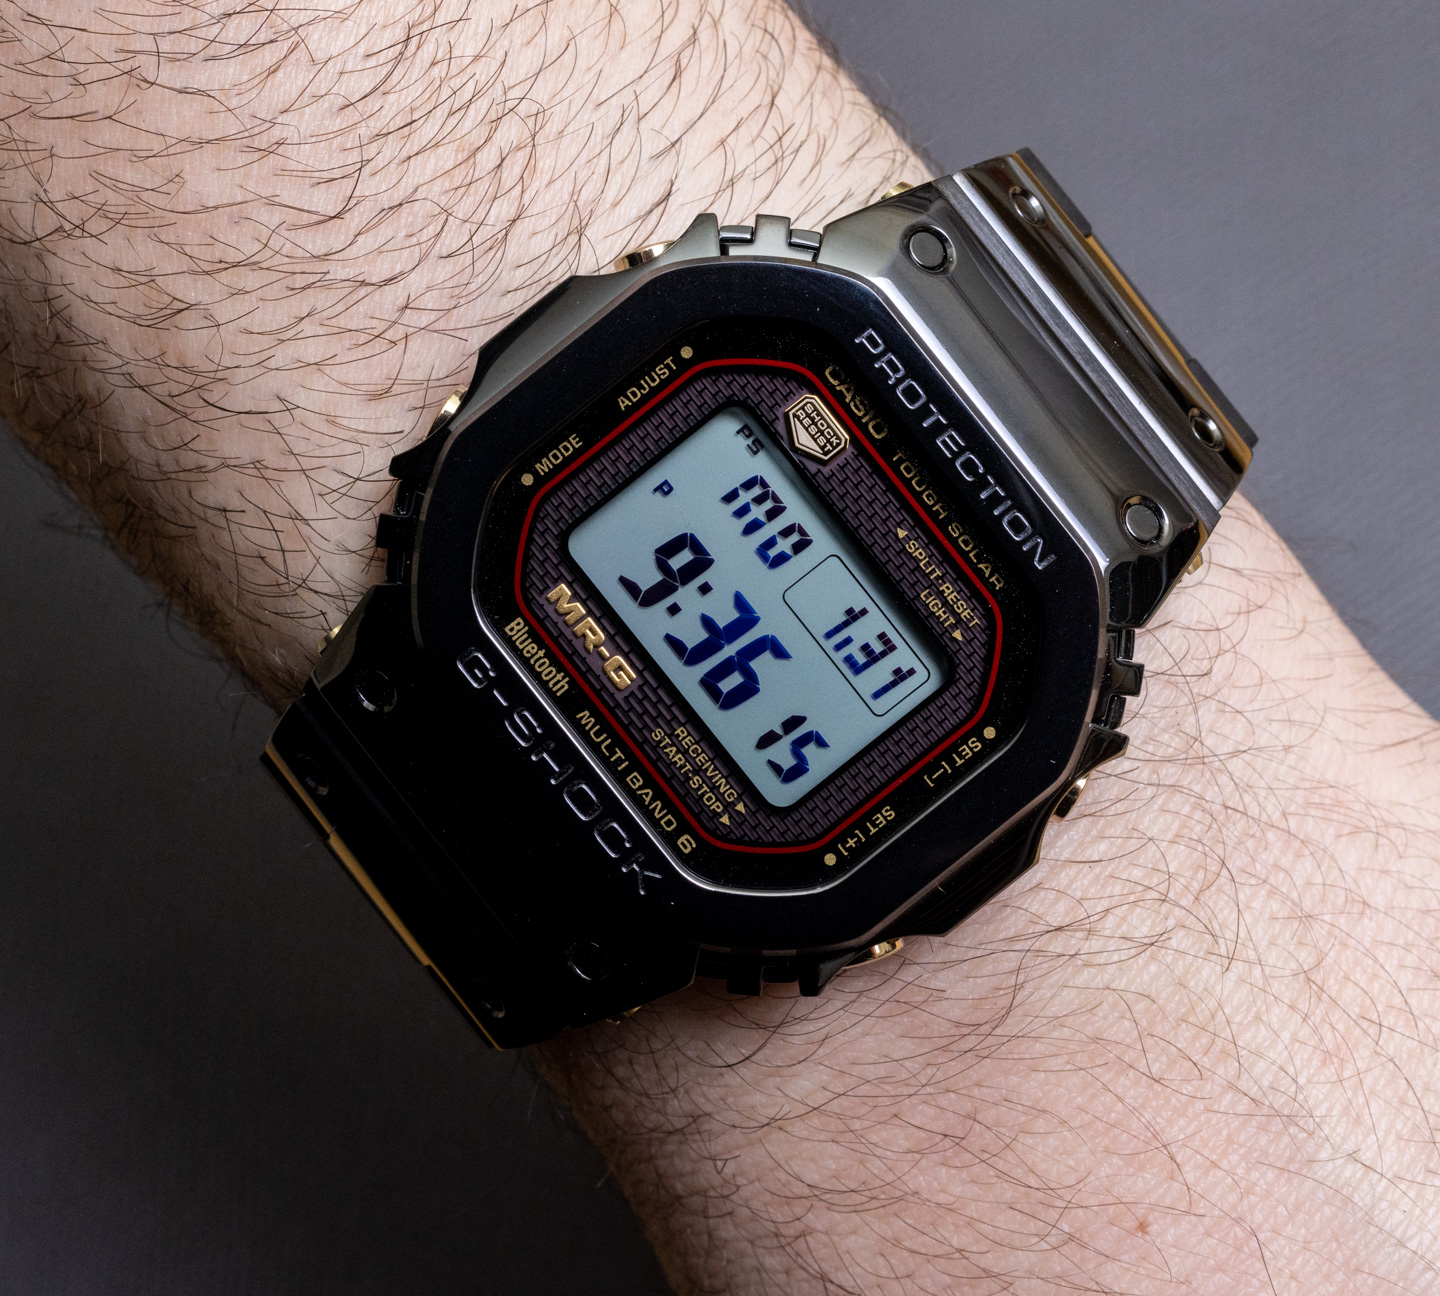 digital watches g shock